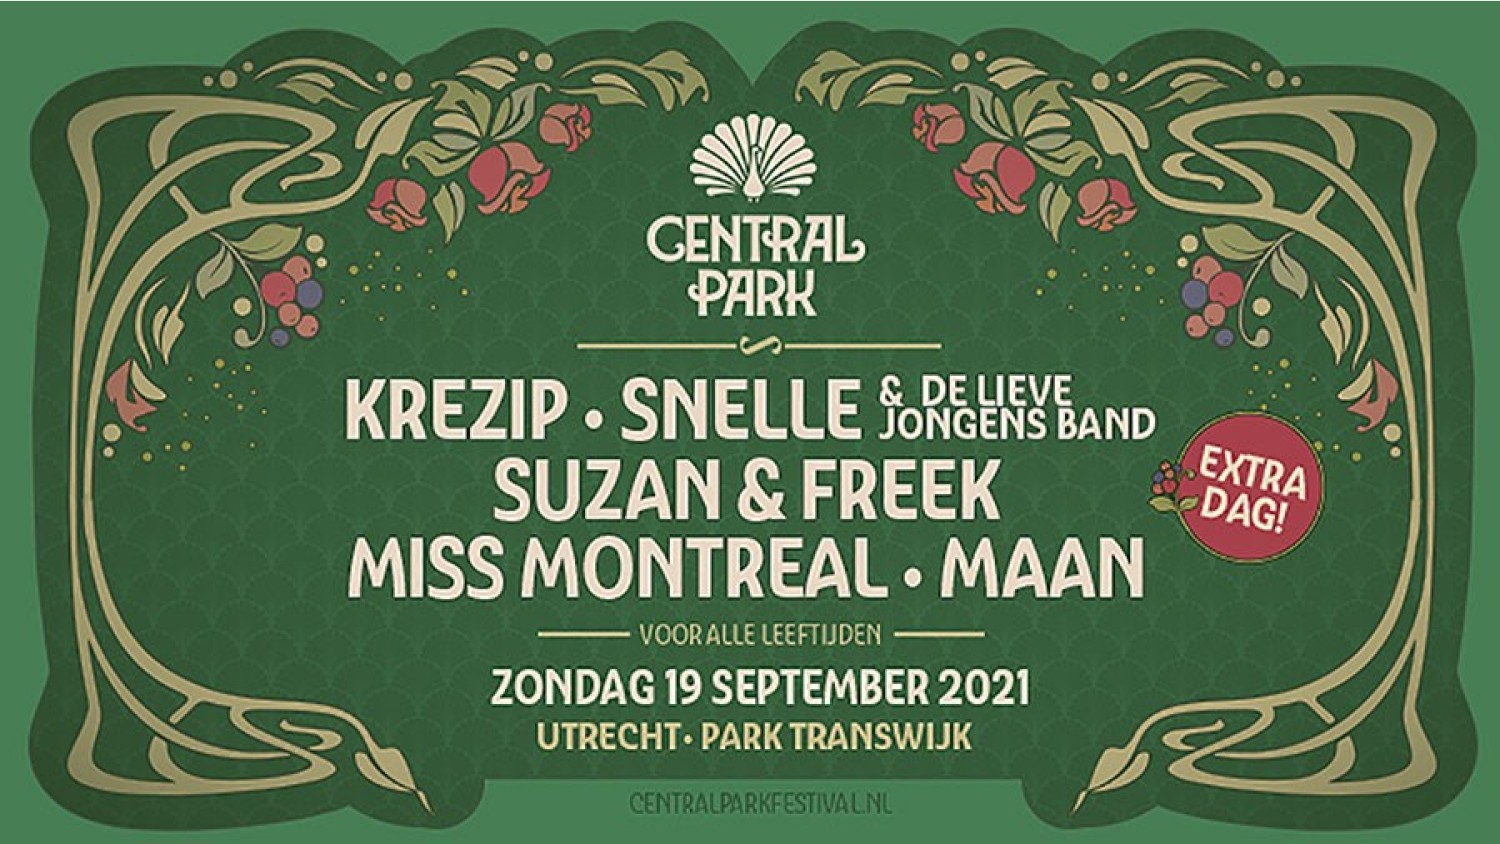 Party nieuws: Extra dag Cental Park Festival voor alle leeftijden